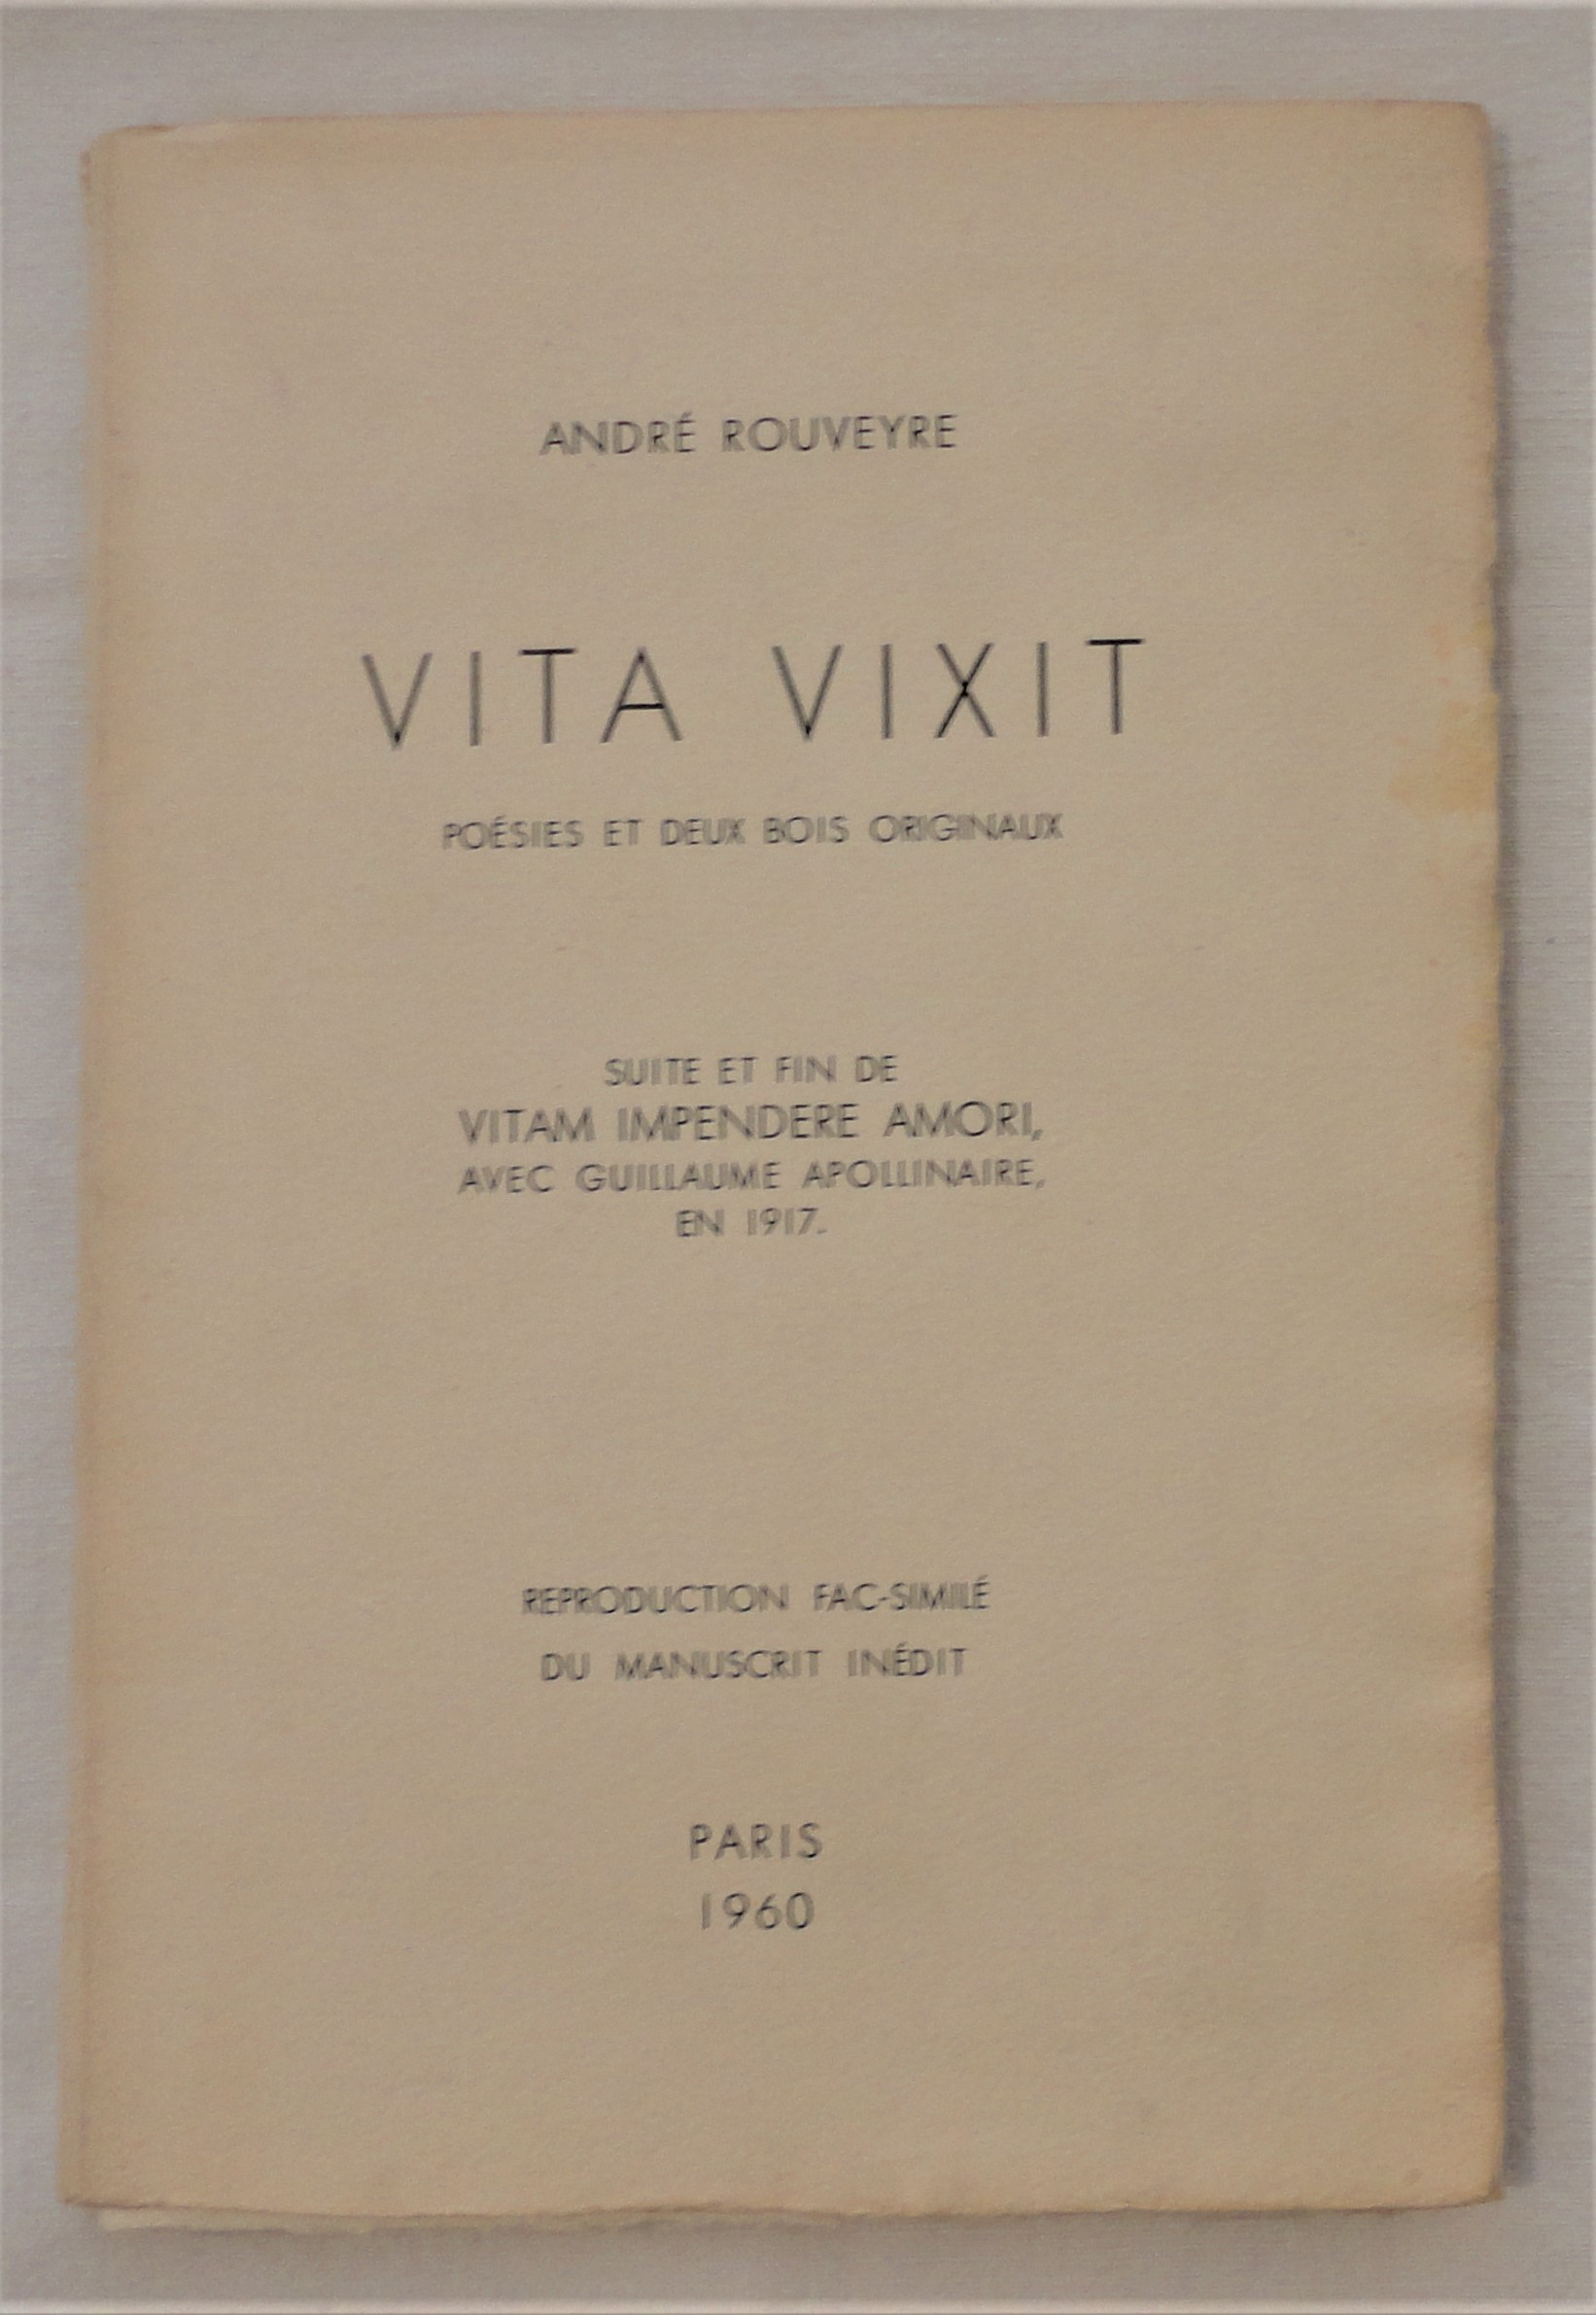 ROUVEYRE (Andr). - Vita vixit. Posies et deux bois originaux. Suite et fin de Vitam Impendere Amori, avec Guillaume Apollinaire en 1917.